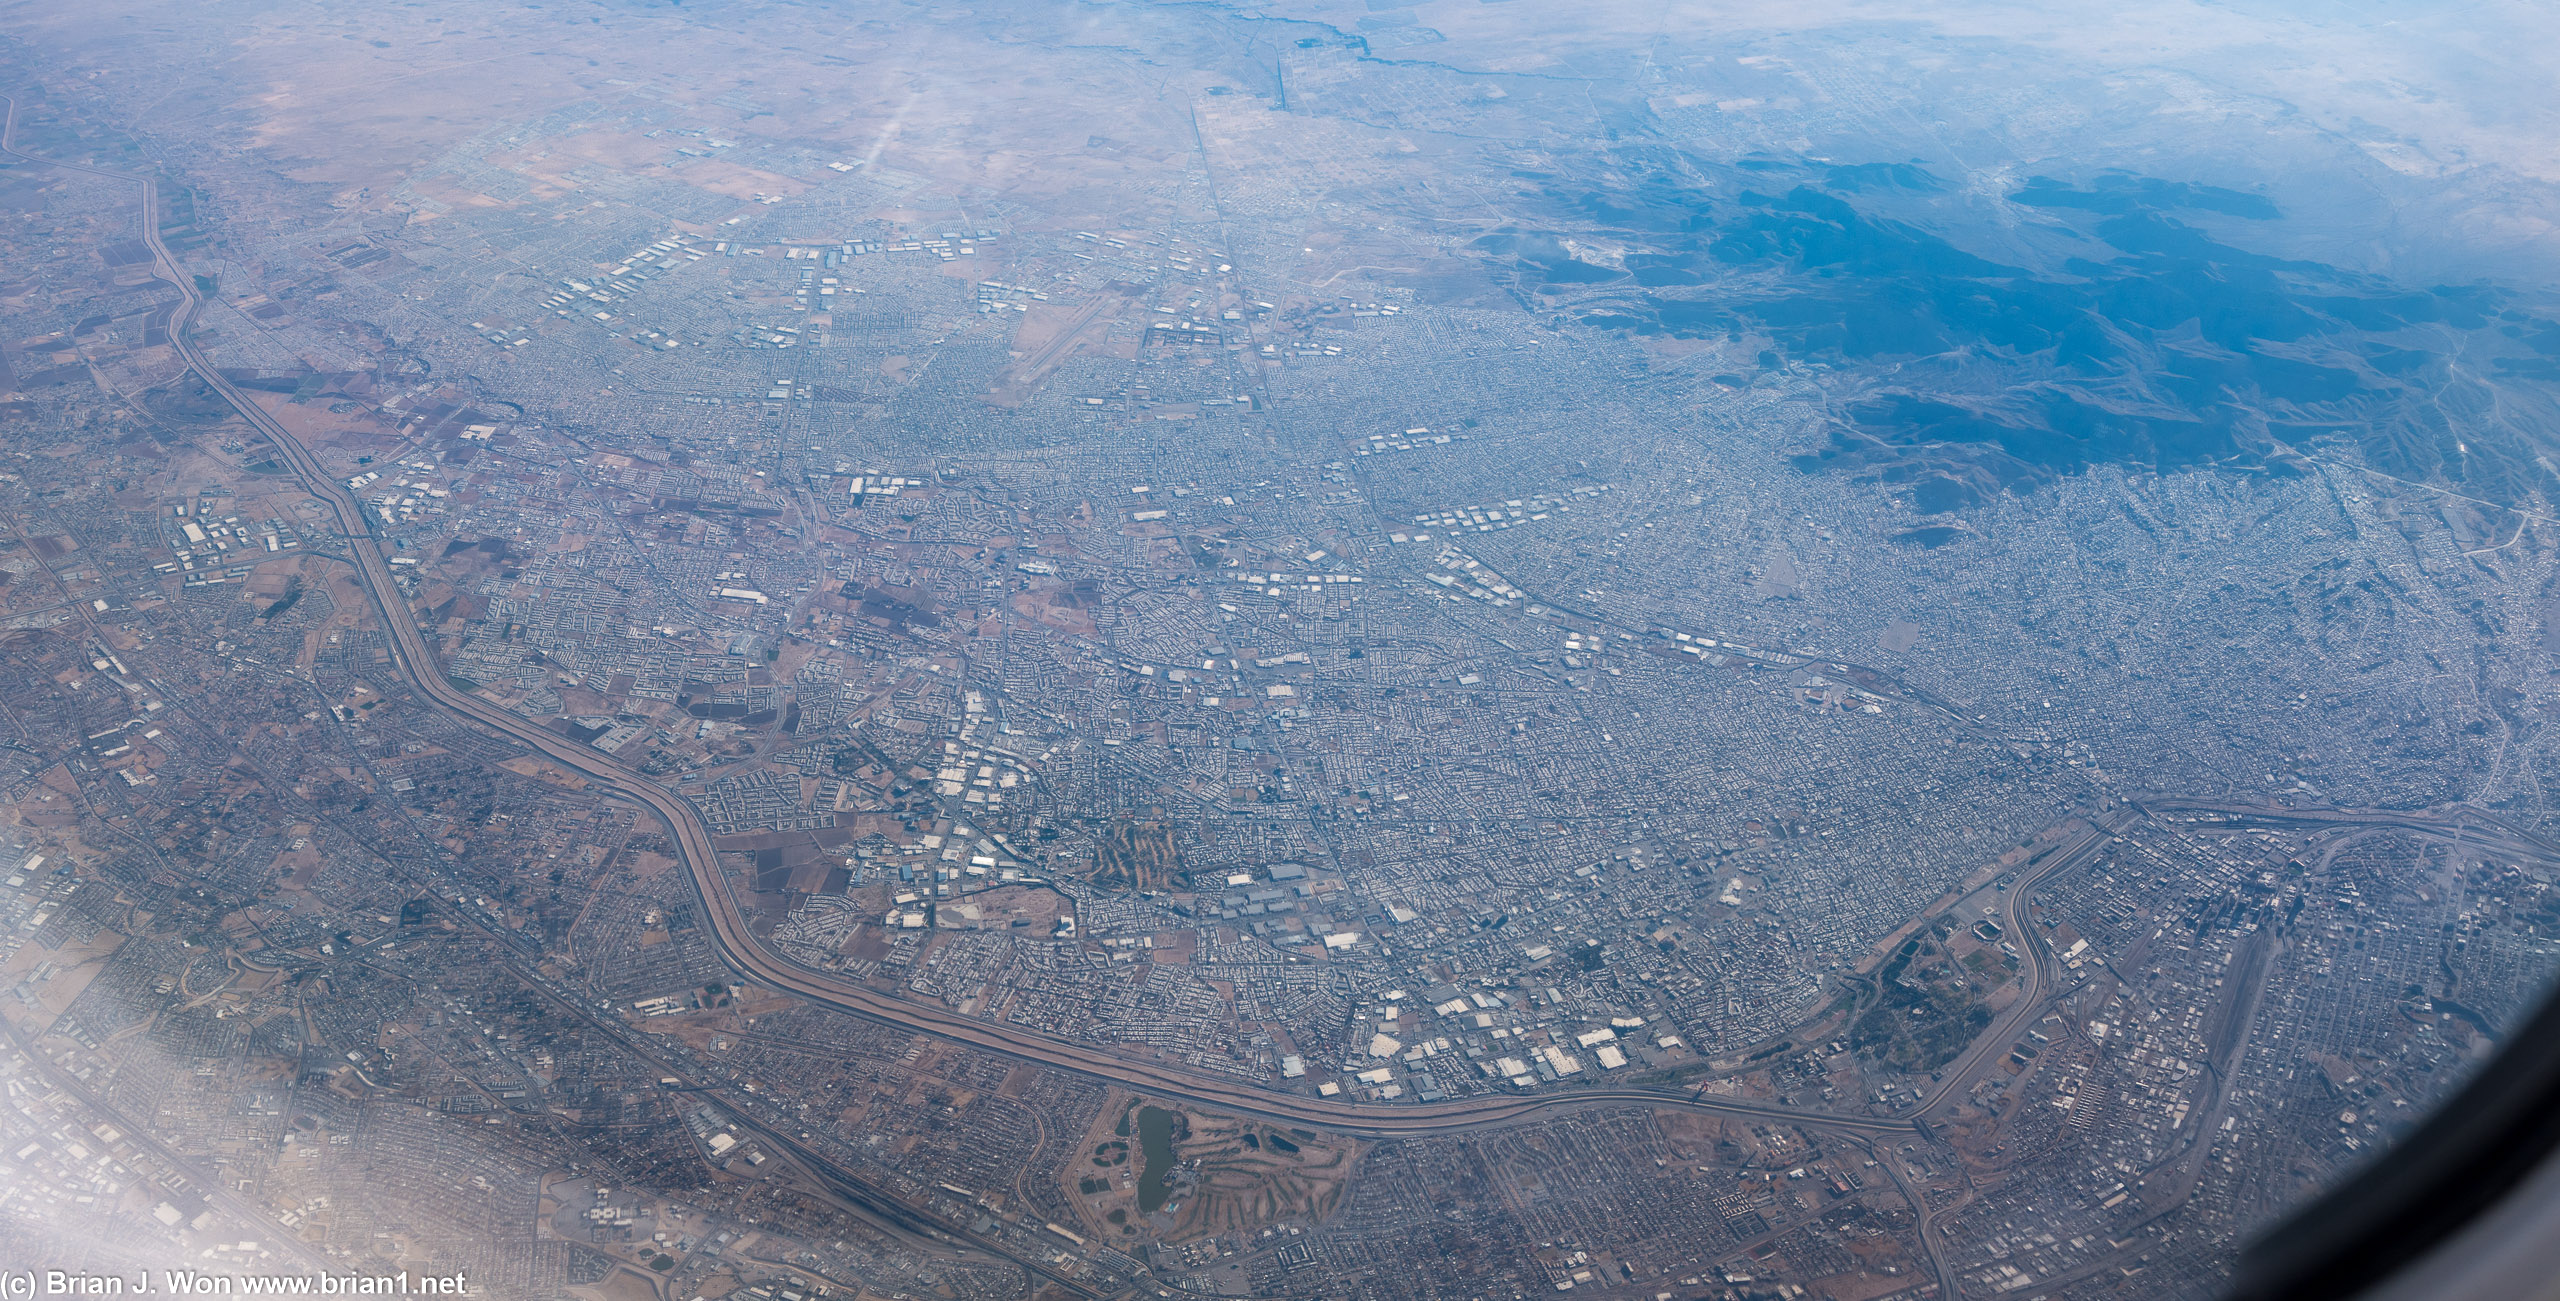 The walls between Ciudad Juarez and El Paso are imposing.